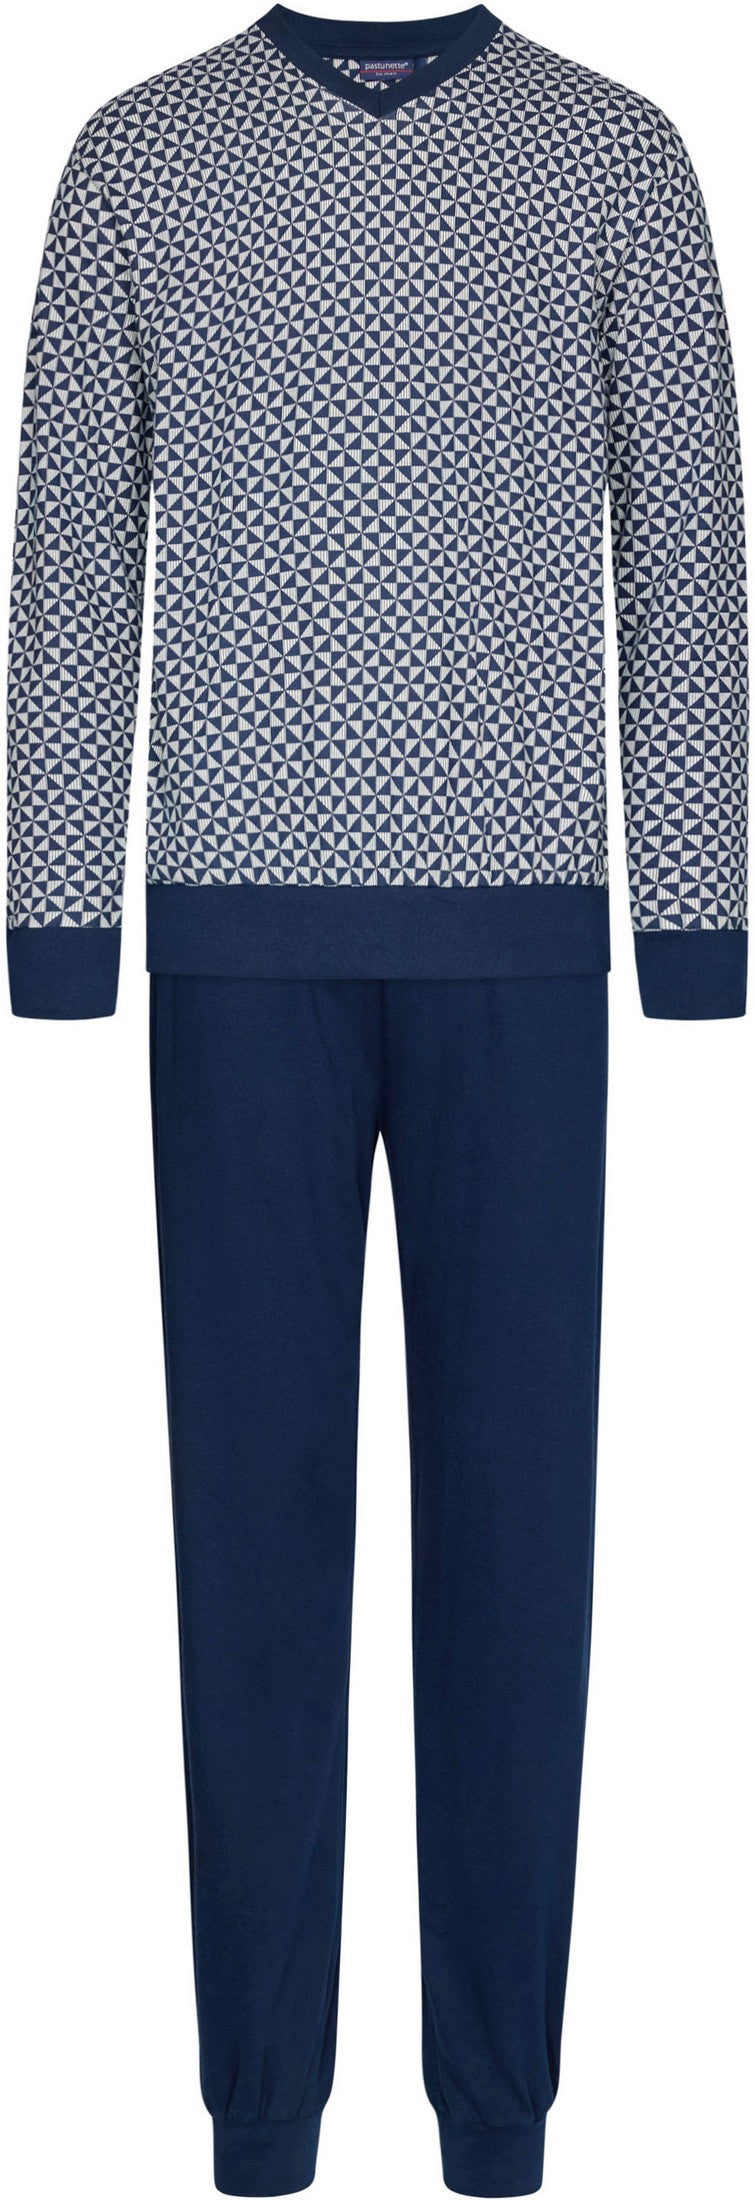 Pyjama 23232-600-2 529 blauw